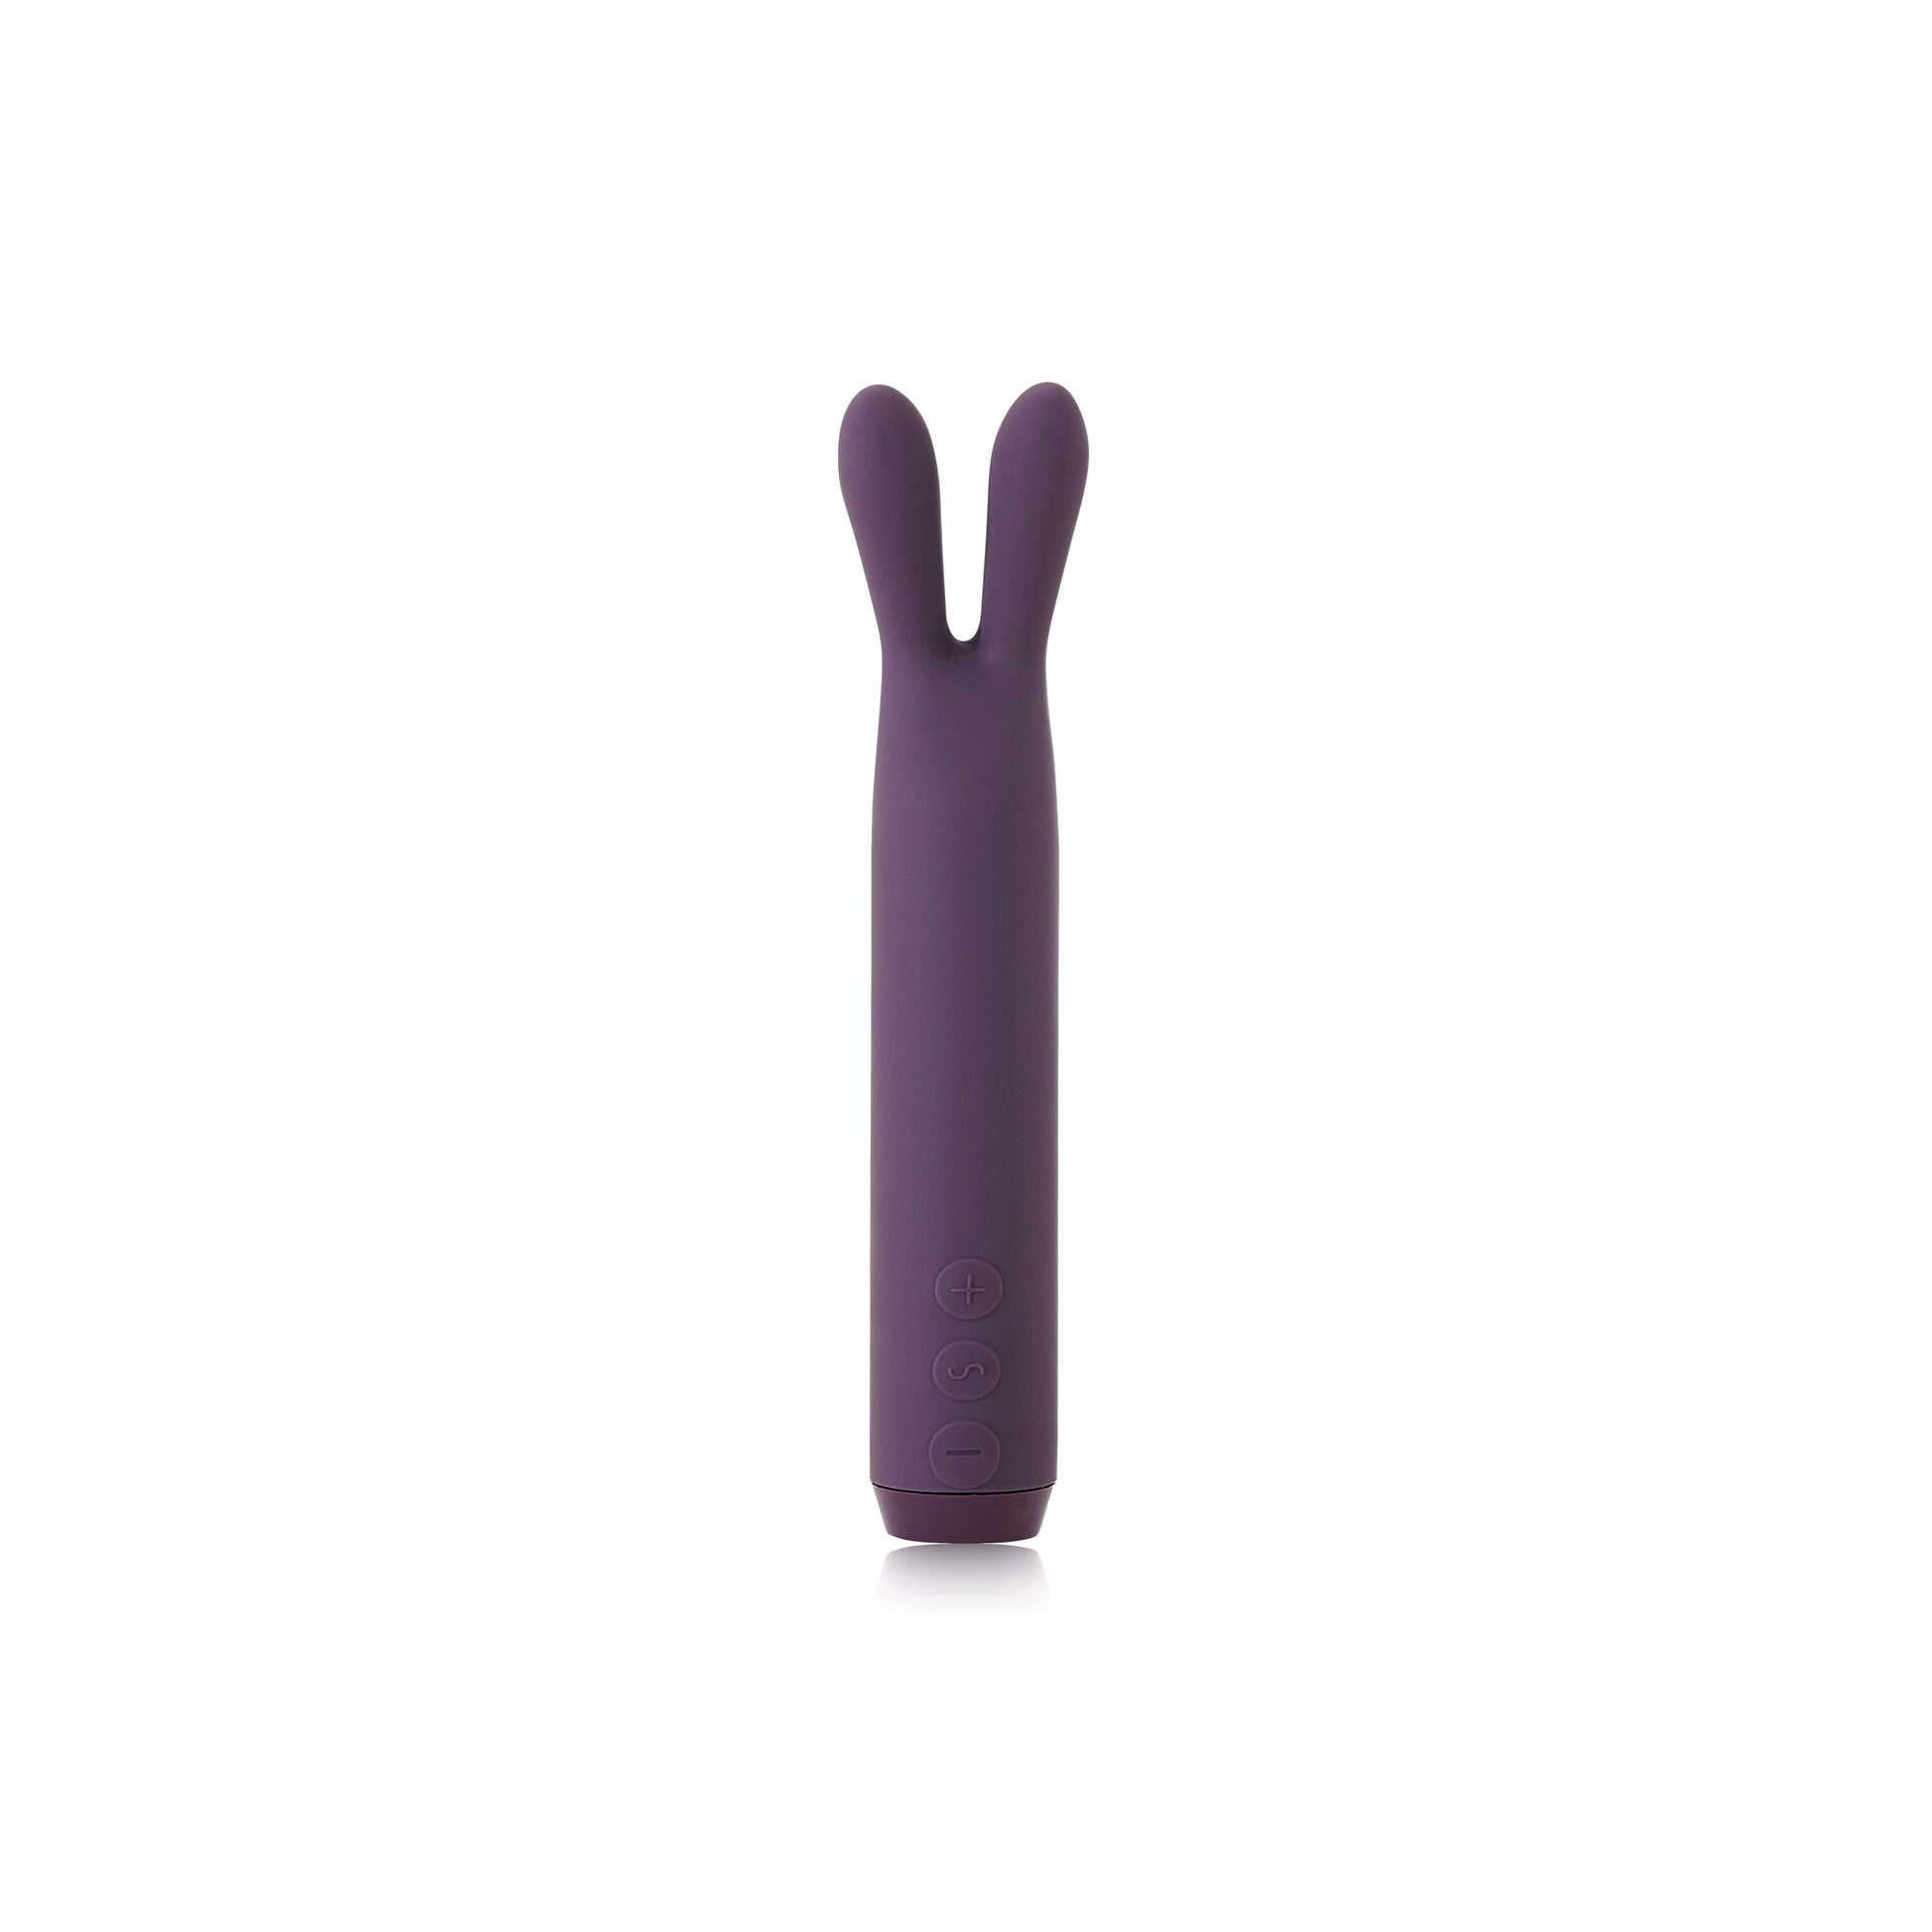 Rabbit Bullet Vibrator in purple